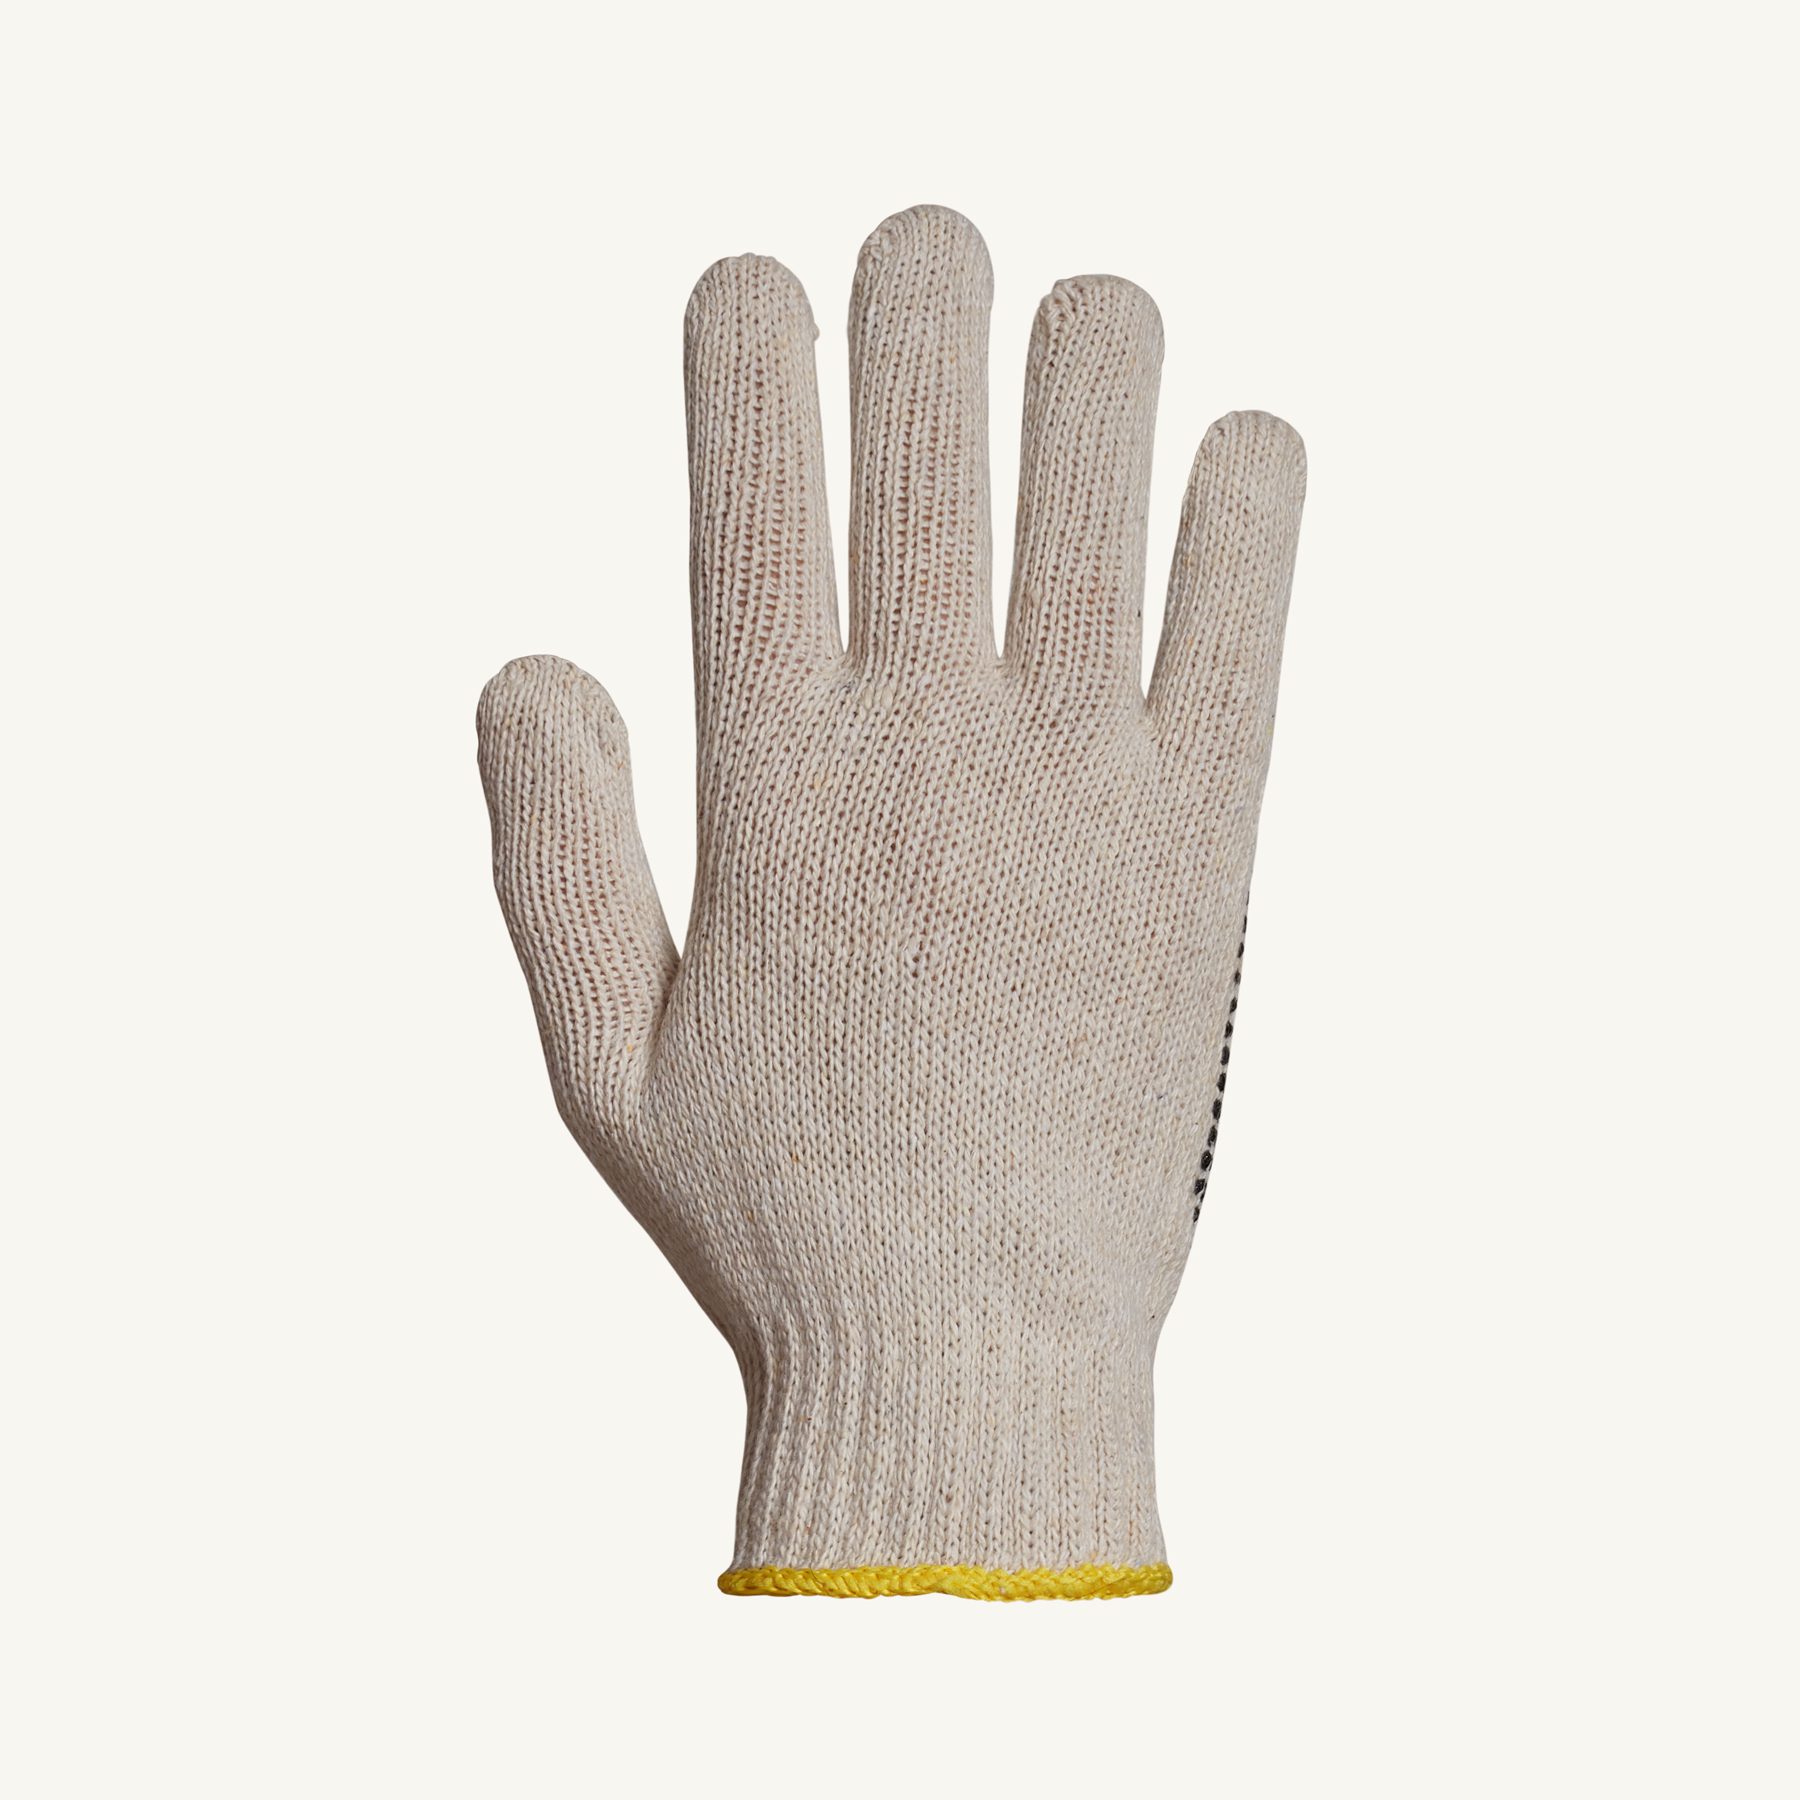 Sure Grip Cotton Gloves - Hollinger Metal Edge